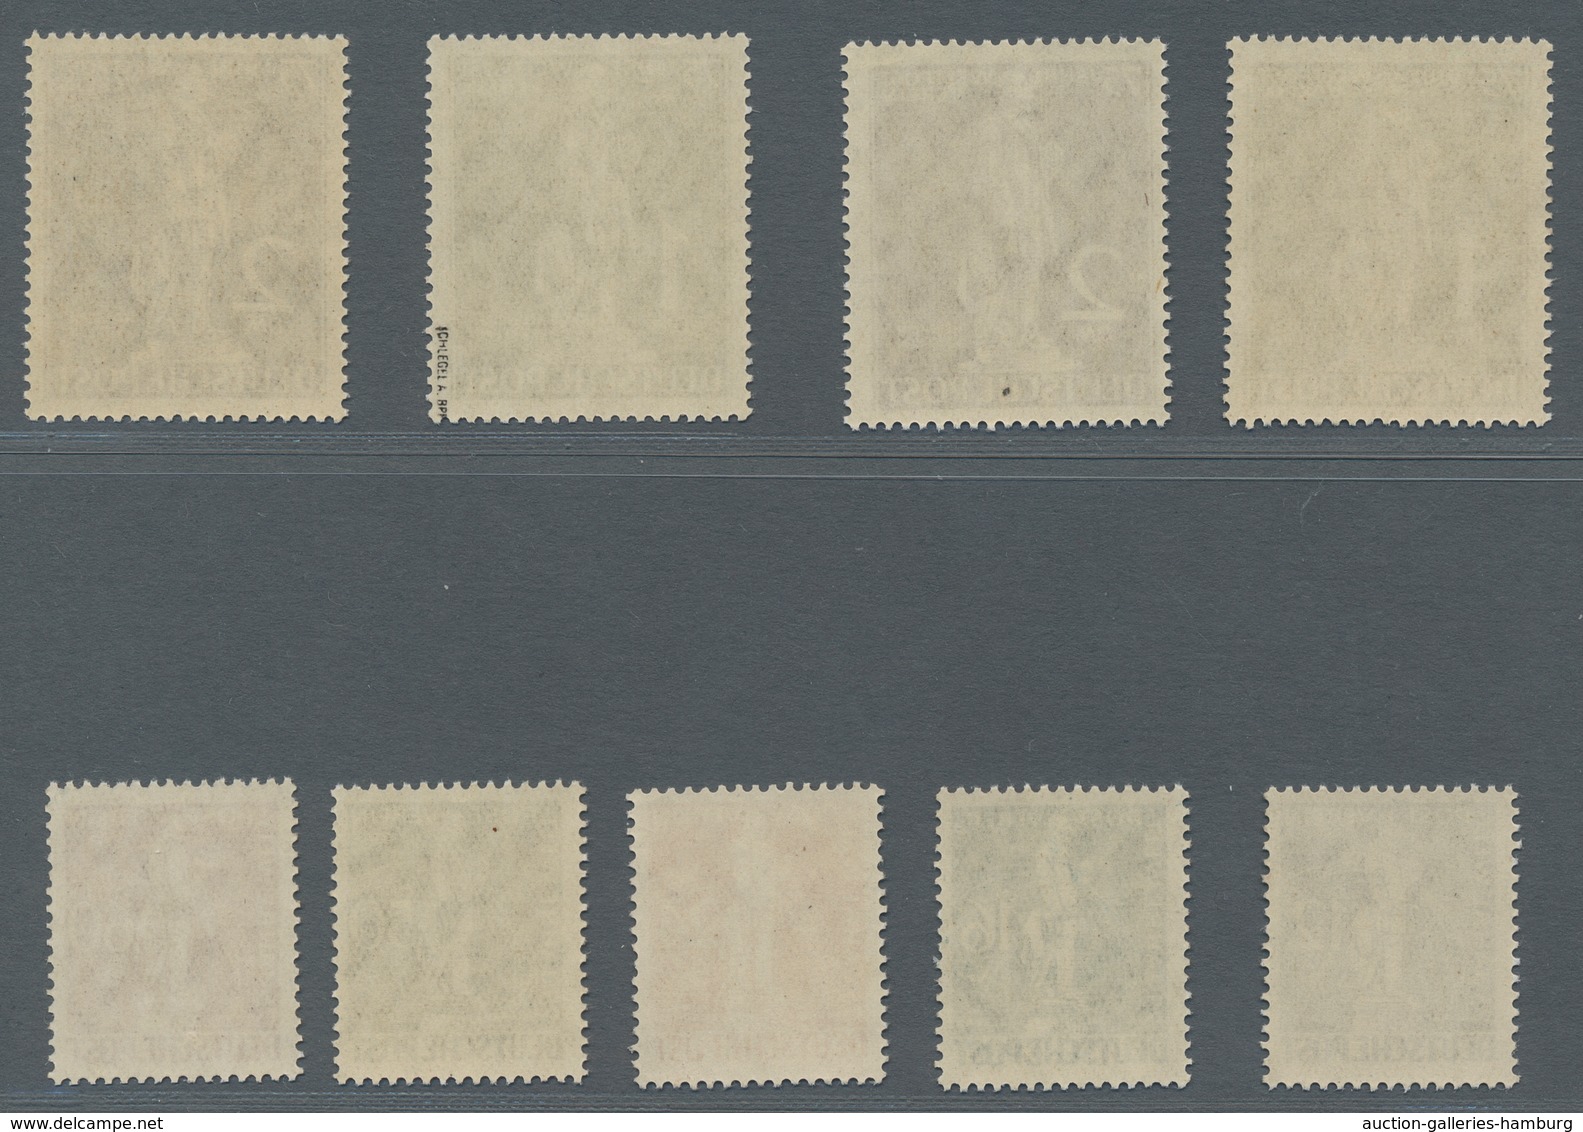 Berlin: 1949, Weltpostverein, Zwei Postfrische Sätze, Einwandfrei, Farbfrisch, Mi. 1500,00 - Nuevos